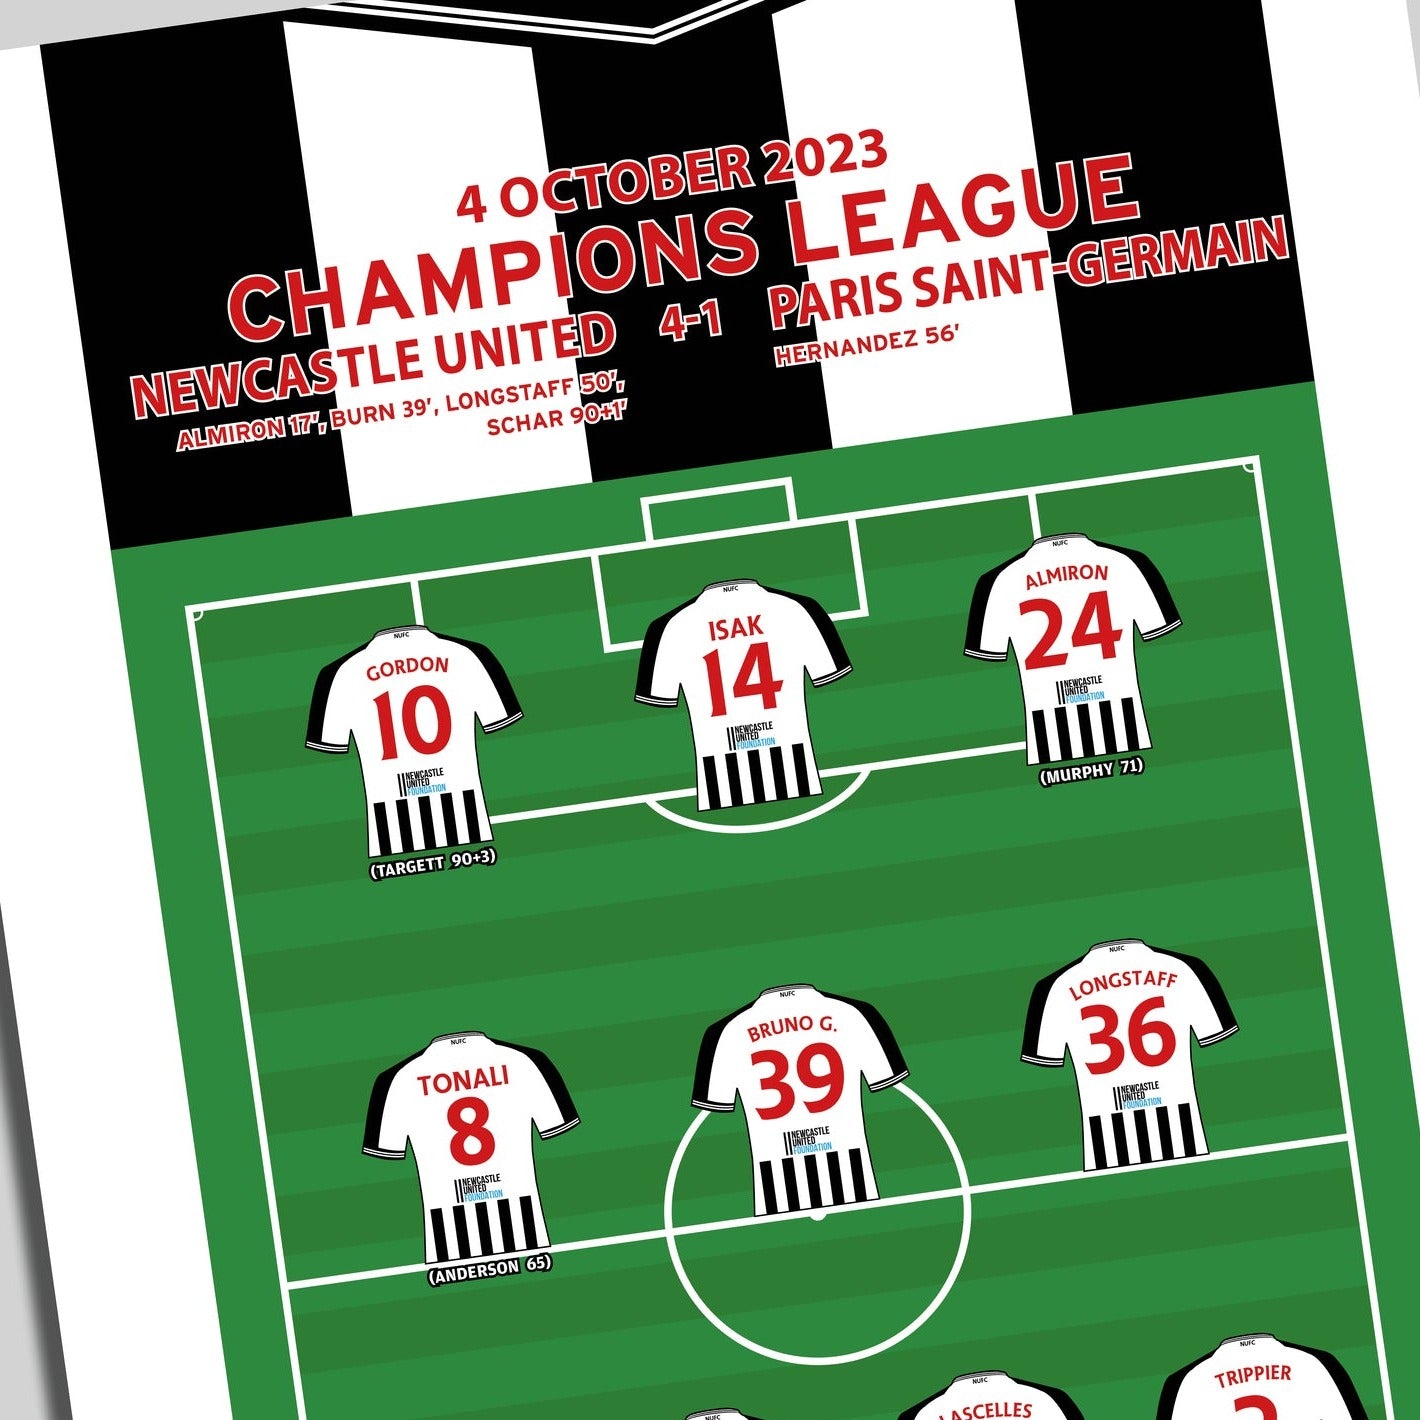 Newcastle United 4-1 Paris Saint-Germain - Champions League 2023